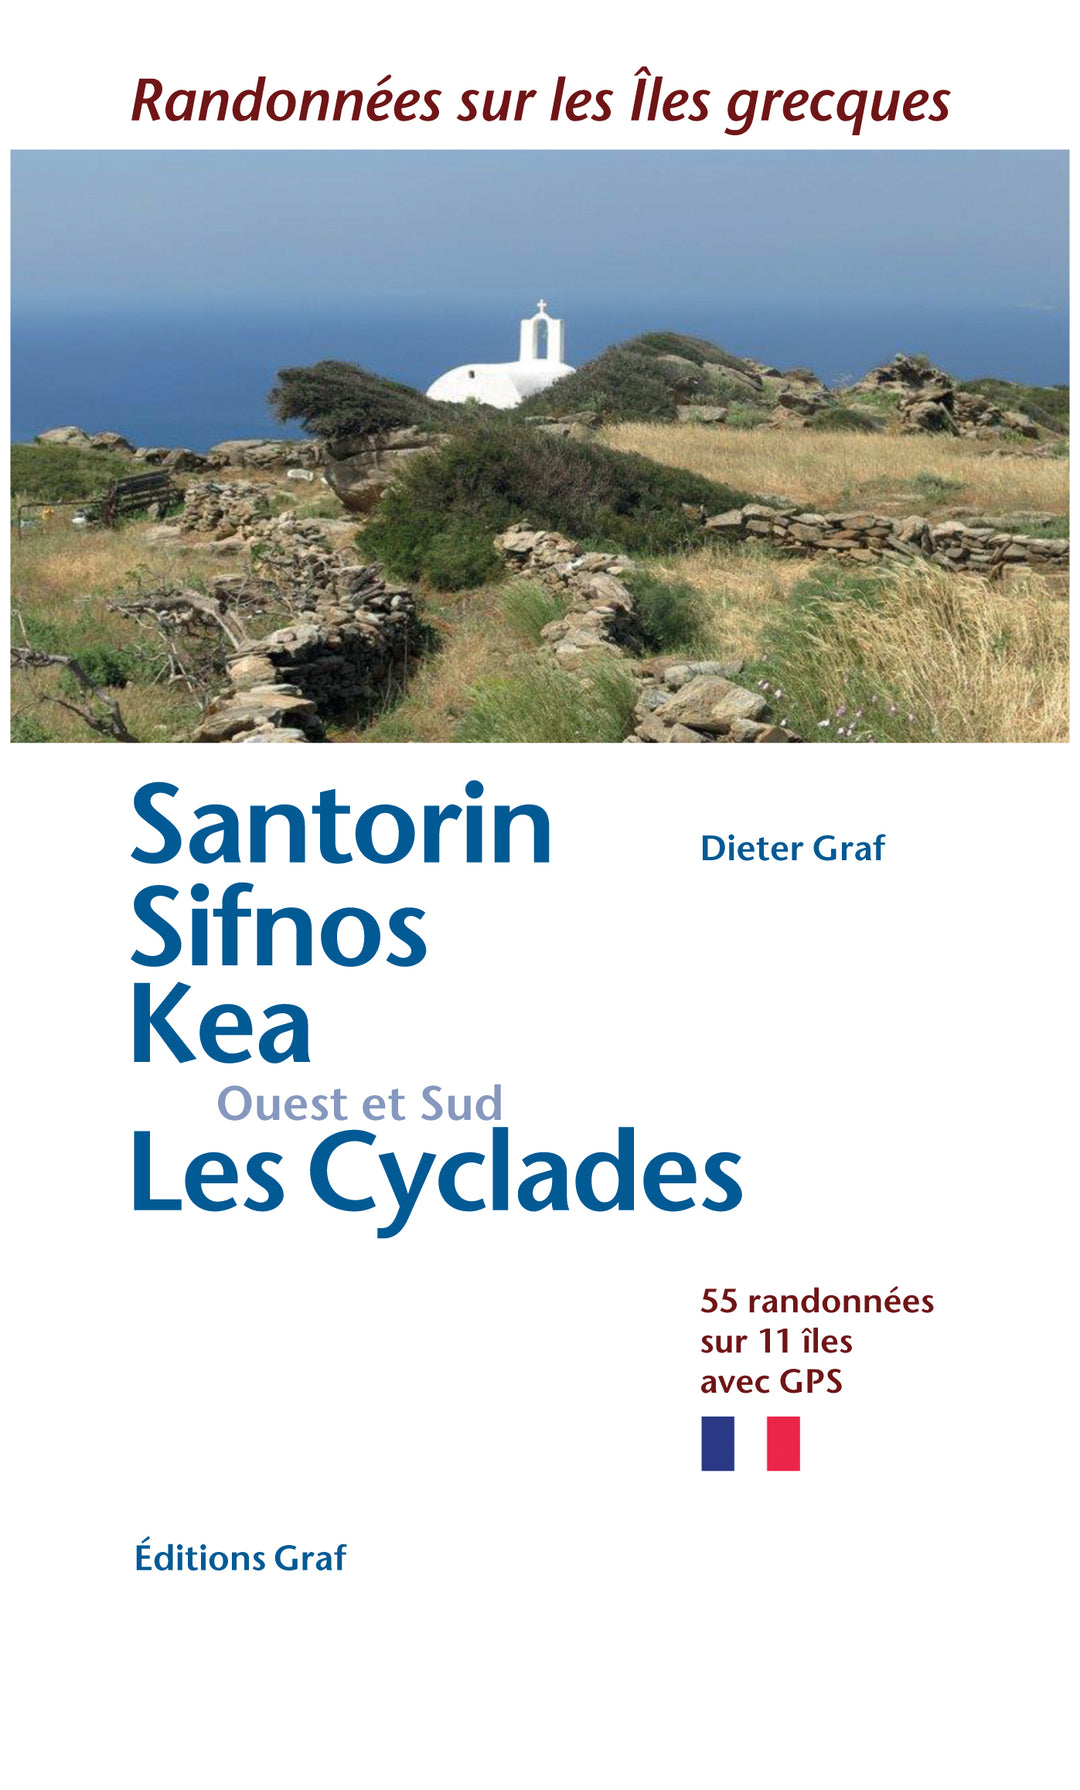 Guide de randonnées - Santorin, Sifnos, Kea, Les Cyclades Ouest & Sud  | Graf Editions